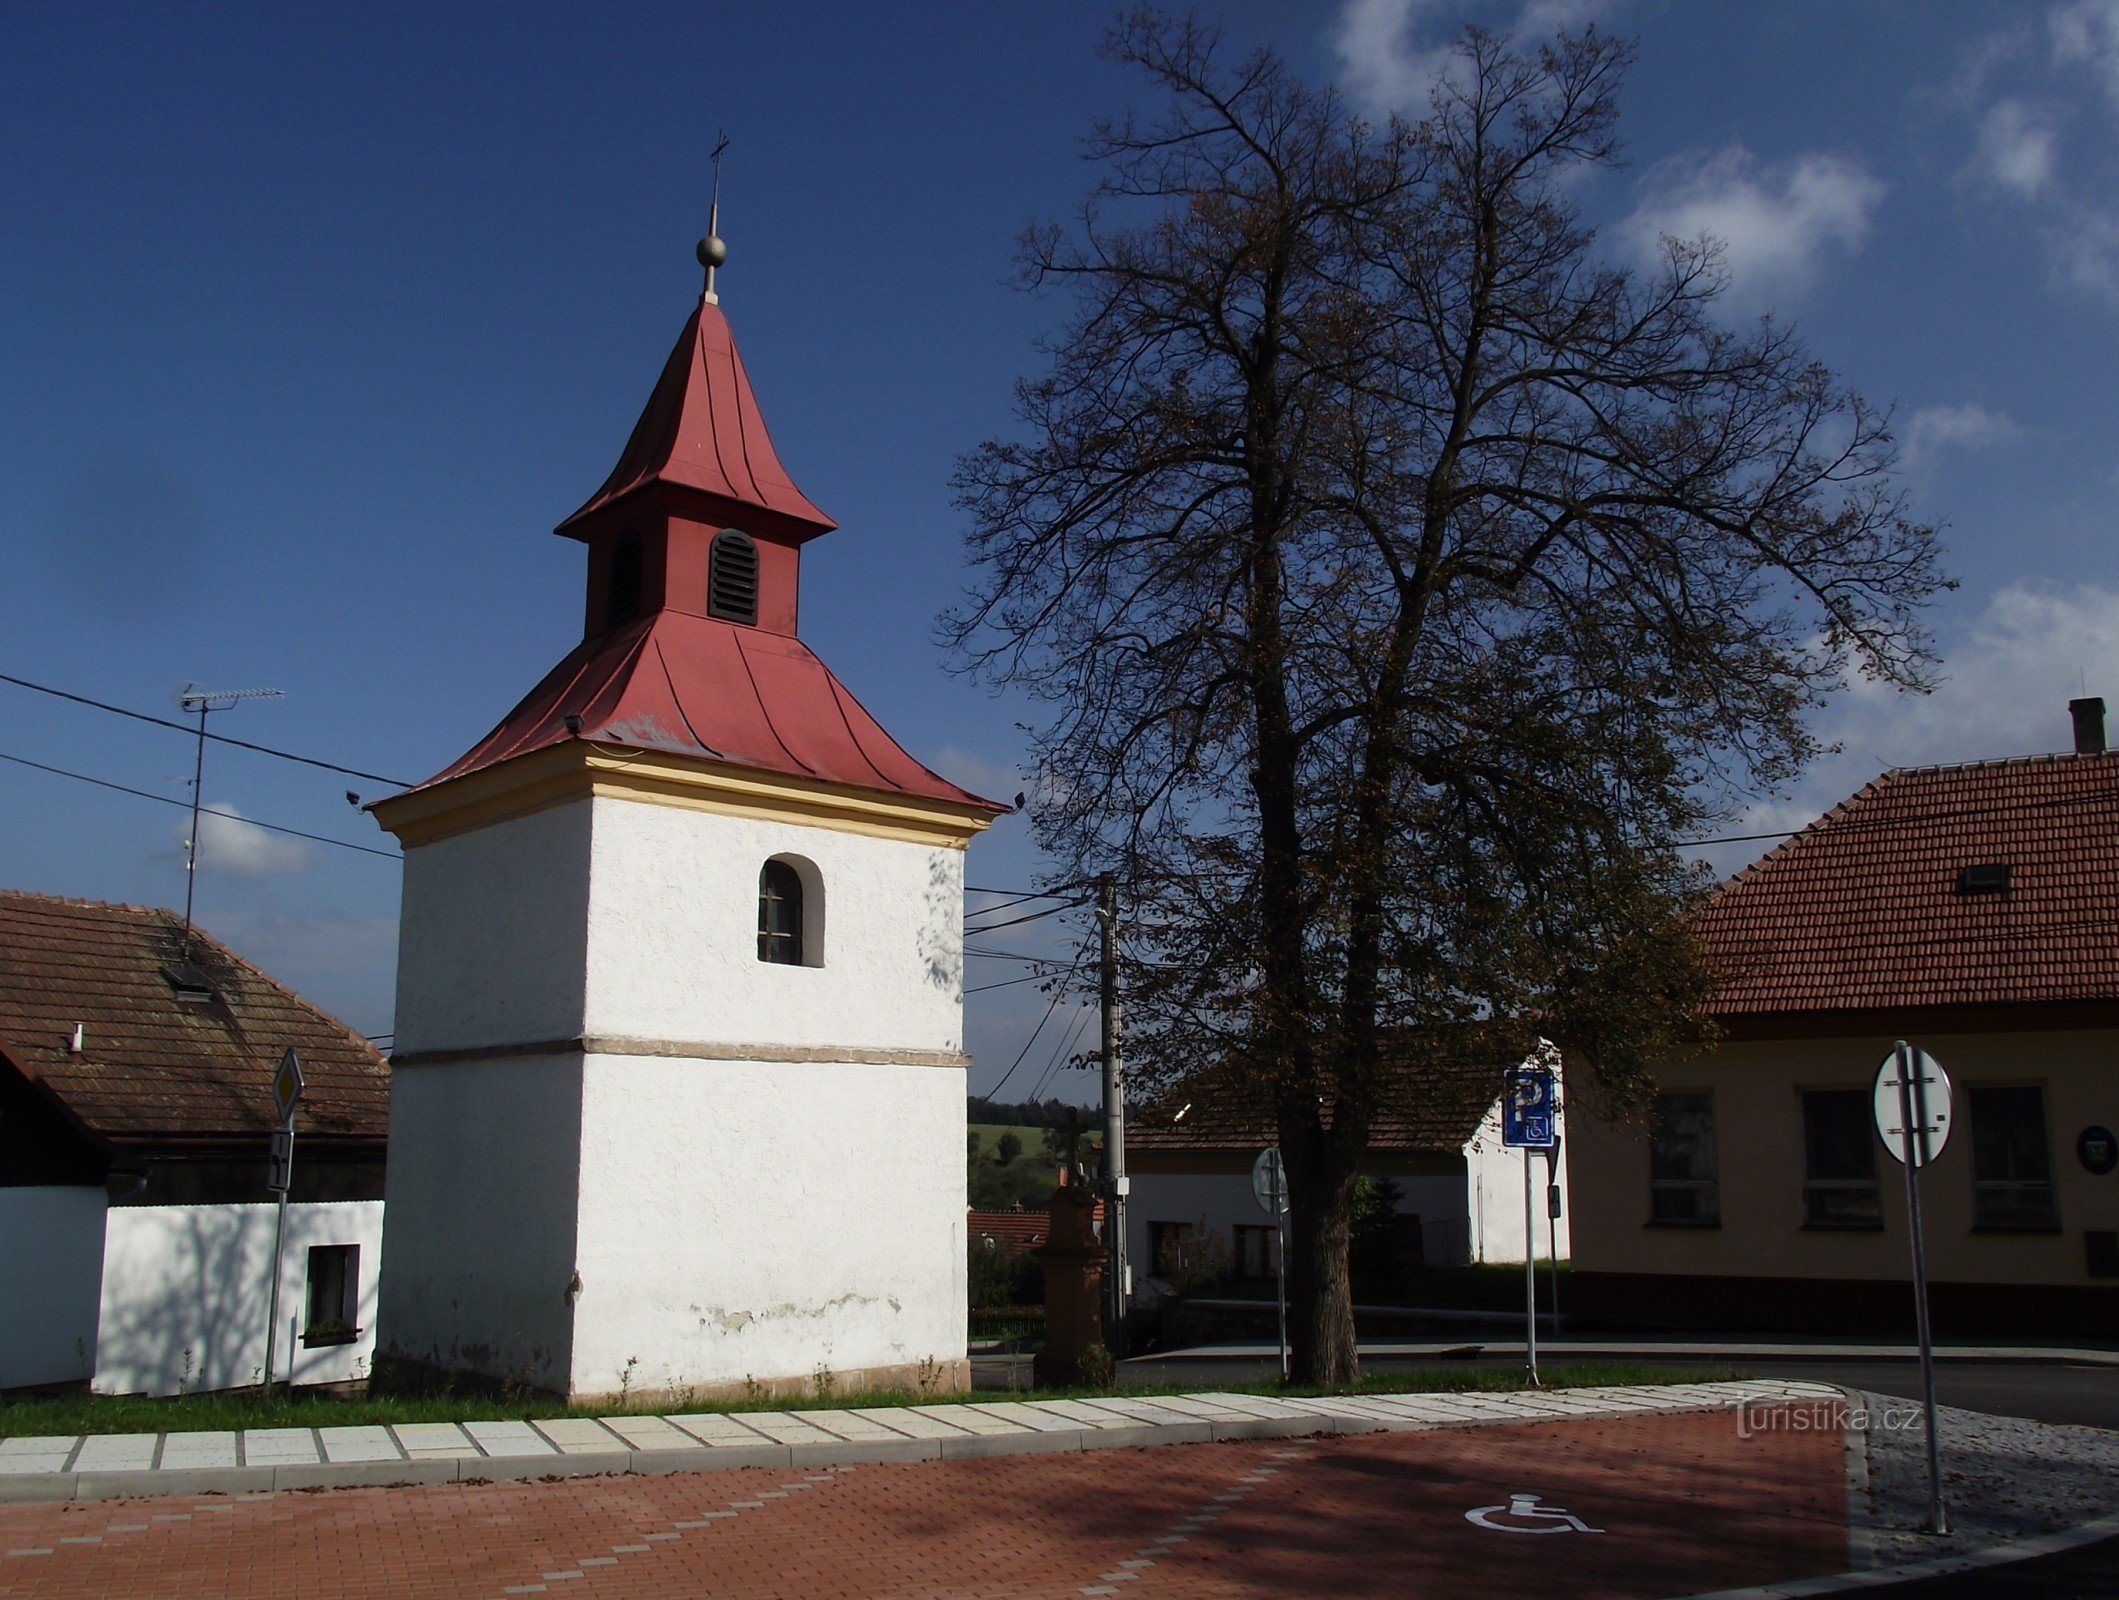 Hluboké Dvory (gần Tišnov) - Nhà nguyện Đức Mẹ Đồng trinh Mary